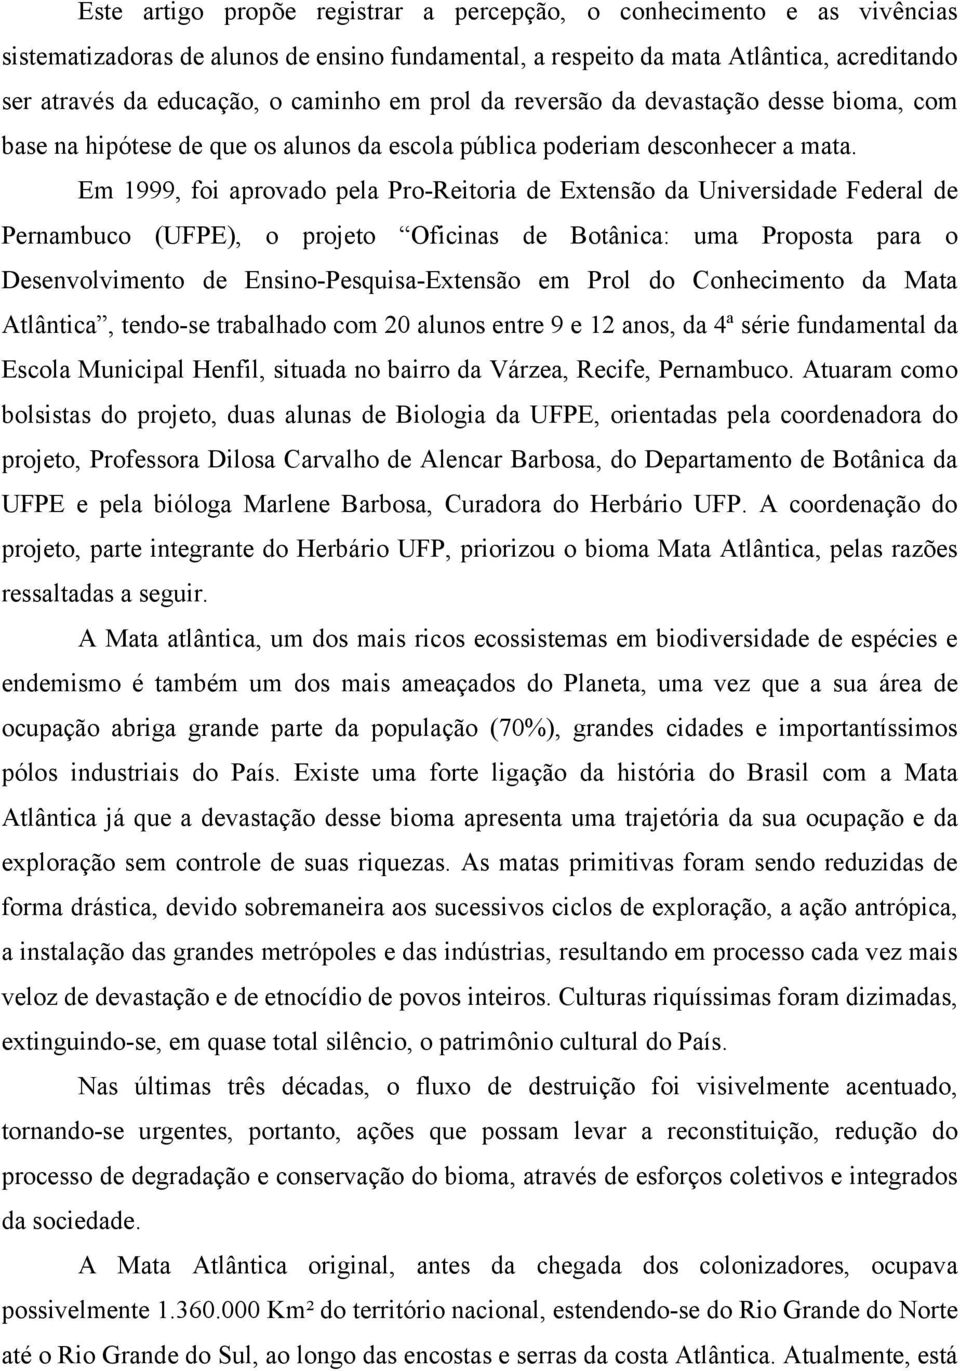 Em 1999, foi aprovado pela Pro-Reitoria de Extensão da Universidade Federal de Pernambuco (UFPE), o projeto Oficinas de Botânica: uma Proposta para o Desenvolvimento de Ensino-Pesquisa-Extensão em